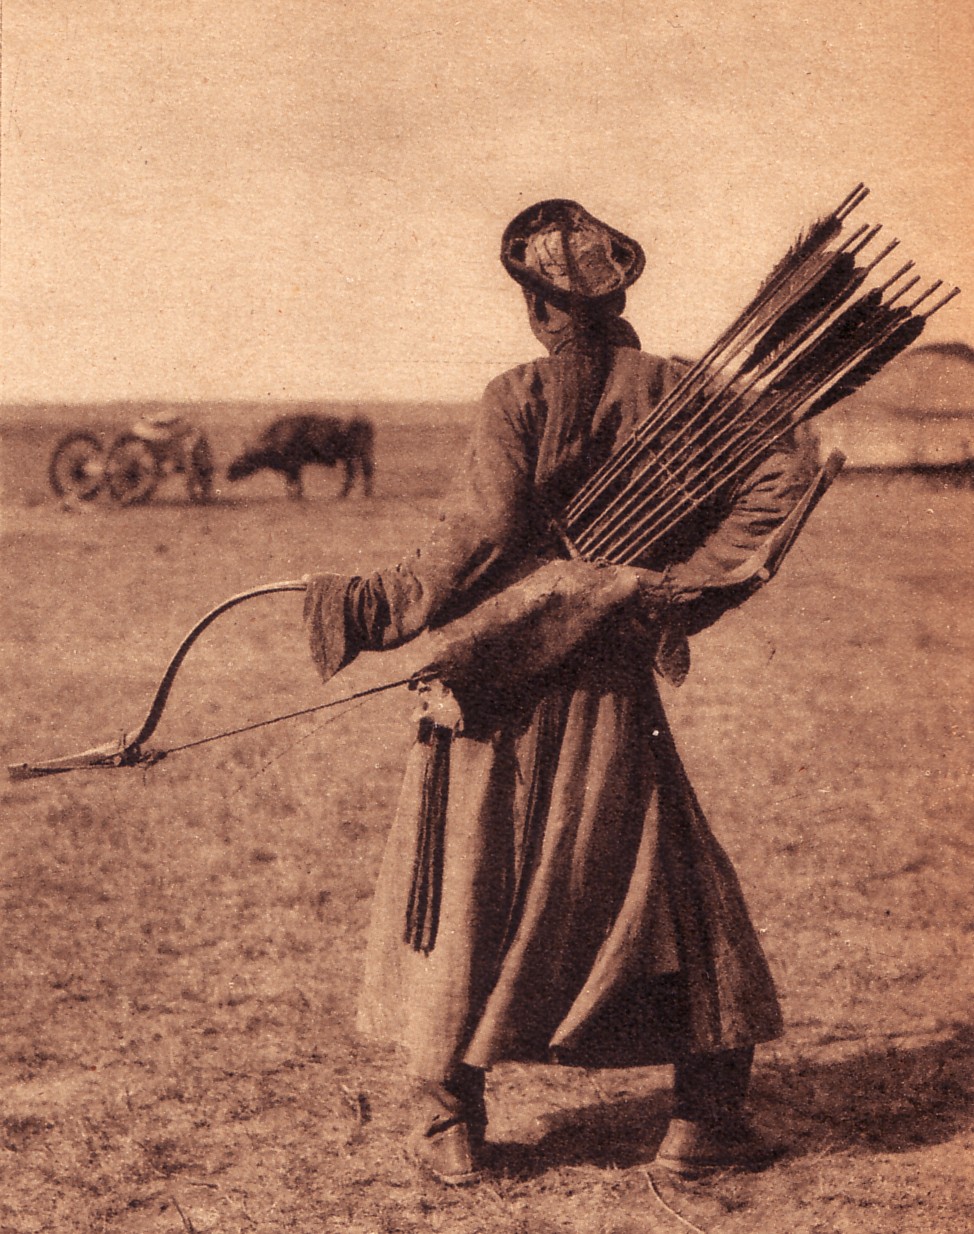 Традиционный монгольский лучник (лук явно не мелкий), фото 1940. Знатоки говорят, что маньчжурский